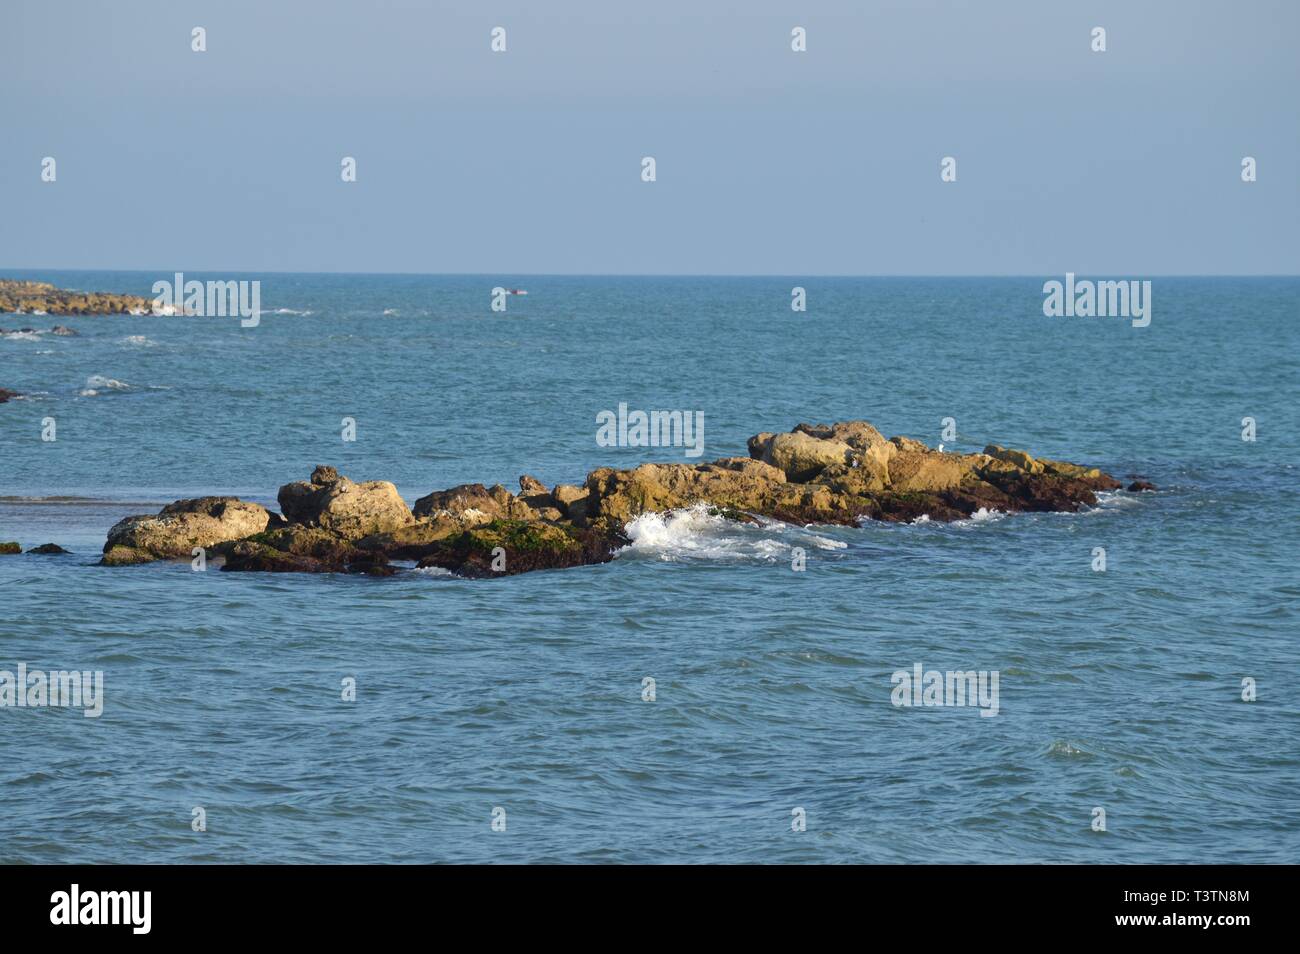 Bella veduta marina siciliana, Mare mediterraneo, Donnalucata, Scicli, Ragusa, Italia, Europa Foto Stock